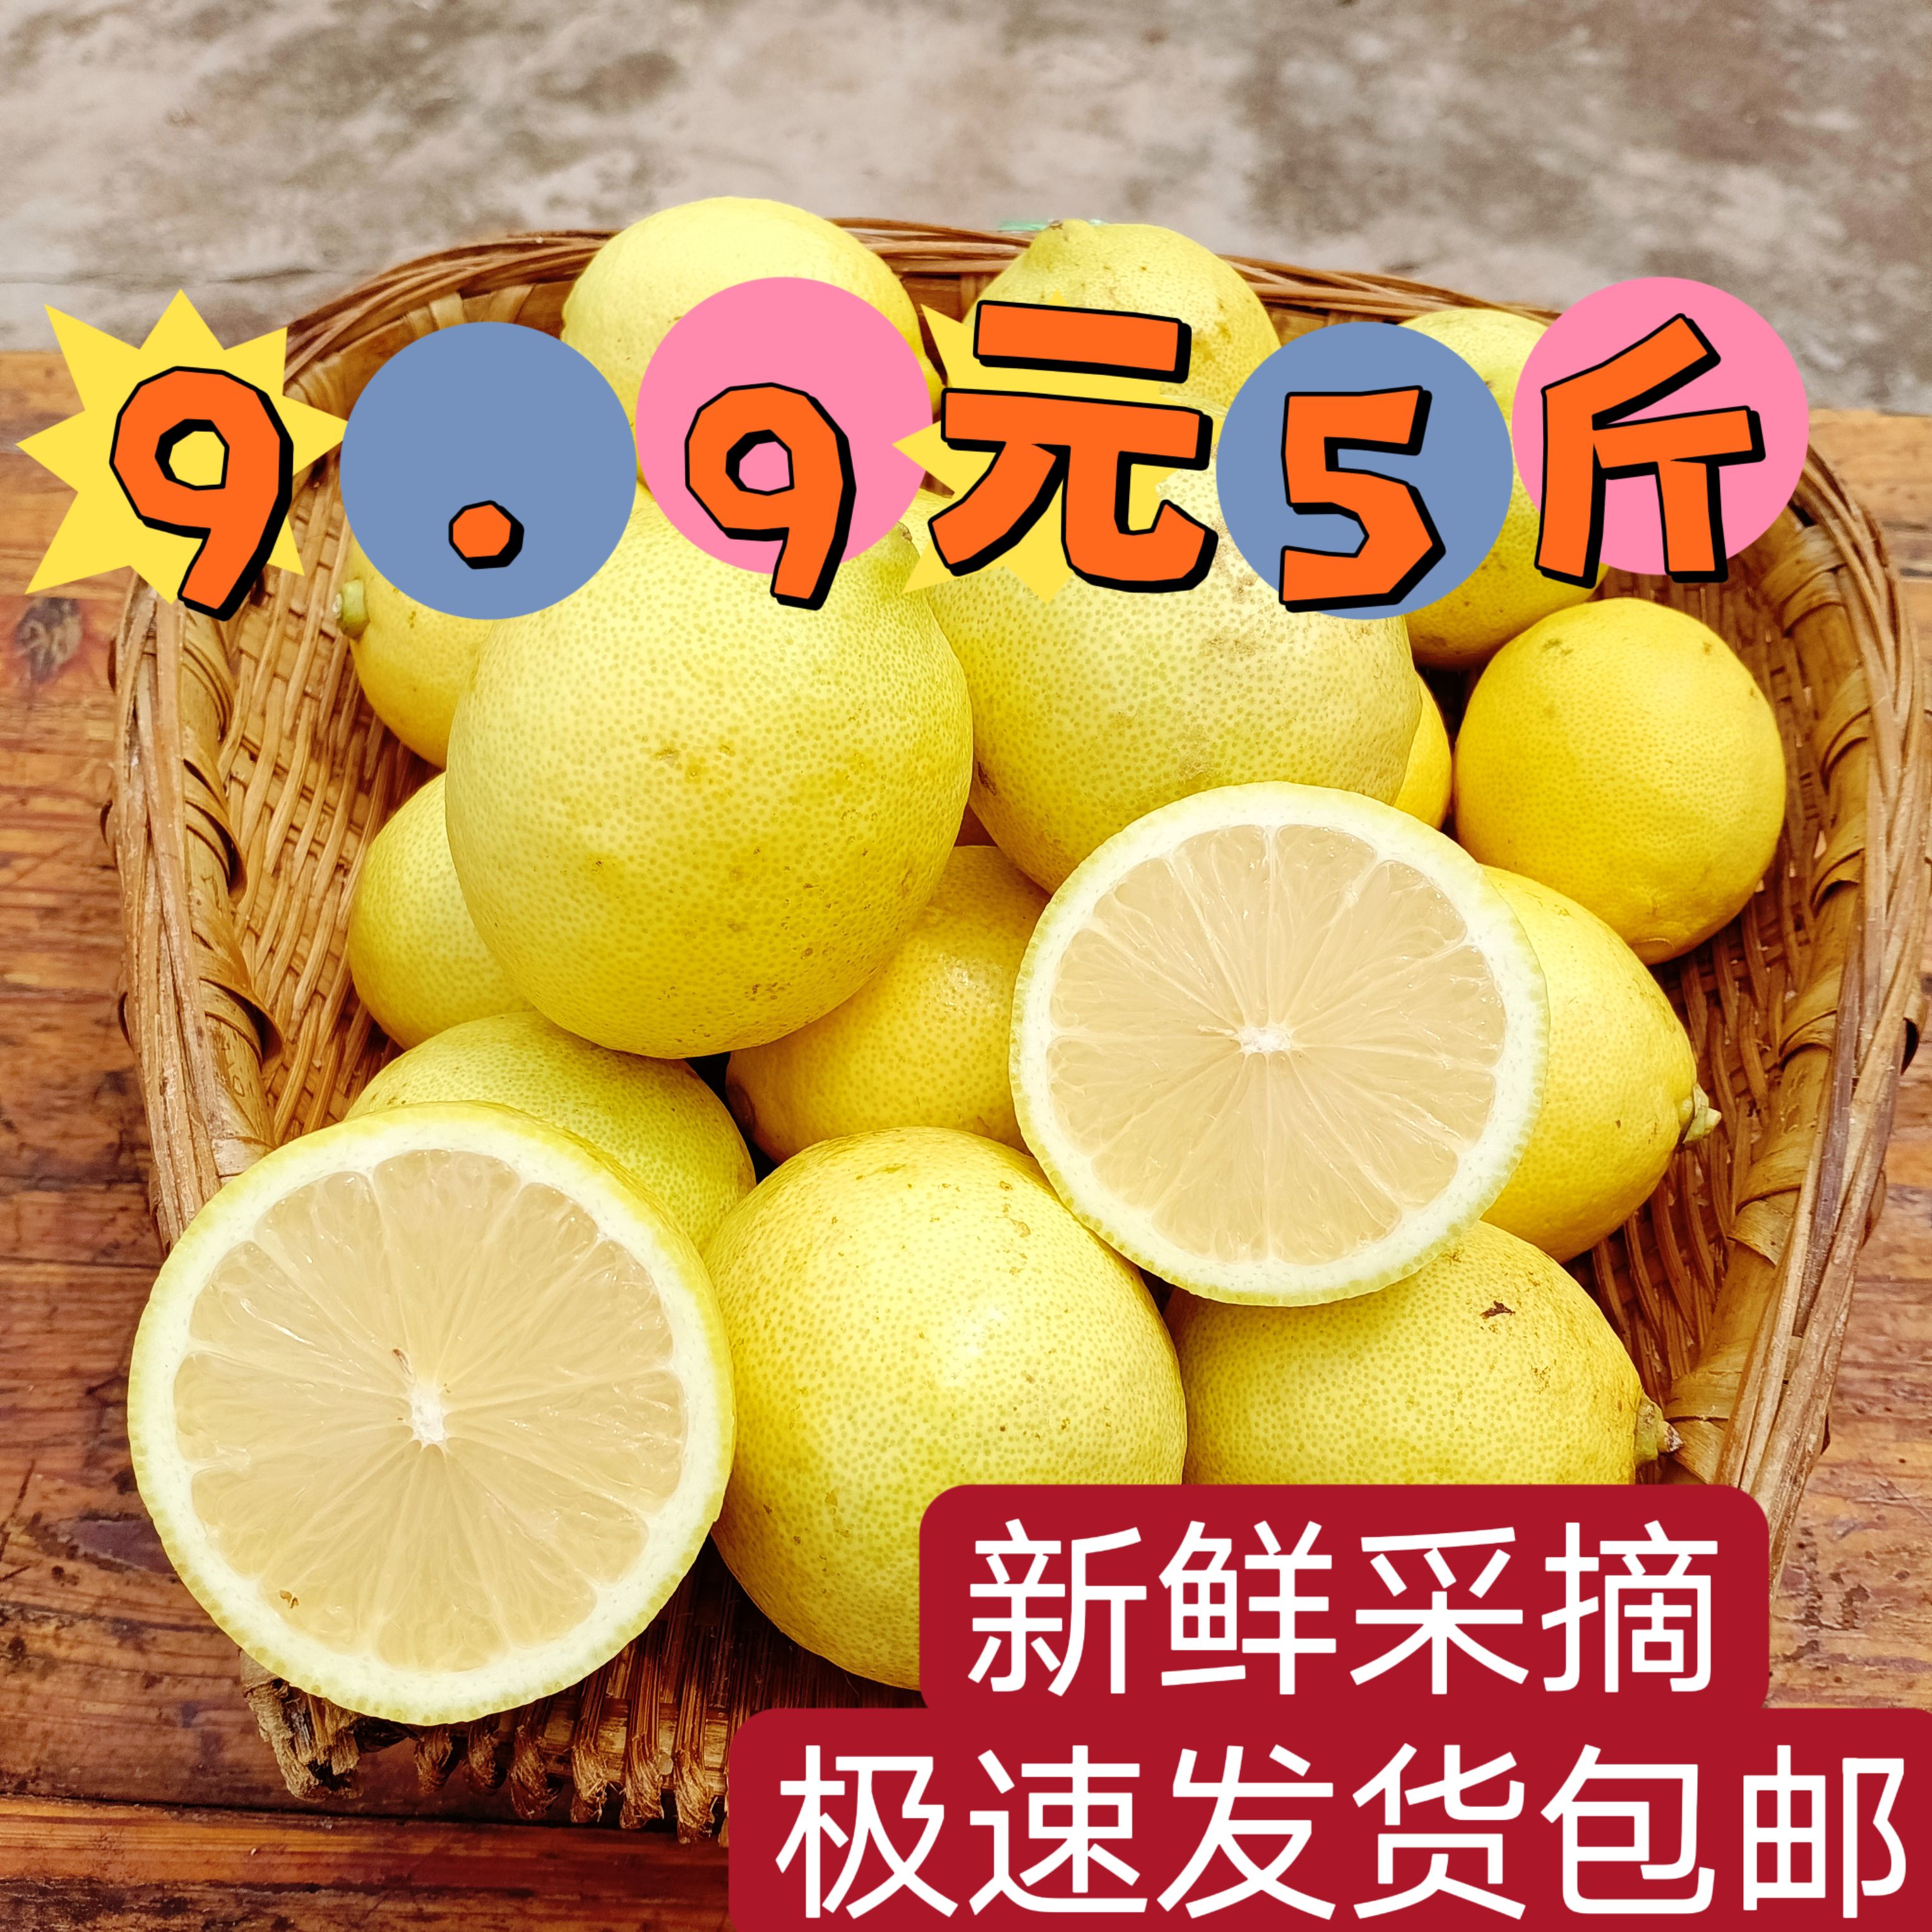 安岳柠檬 5斤9.9元 皮薄多汁包邮